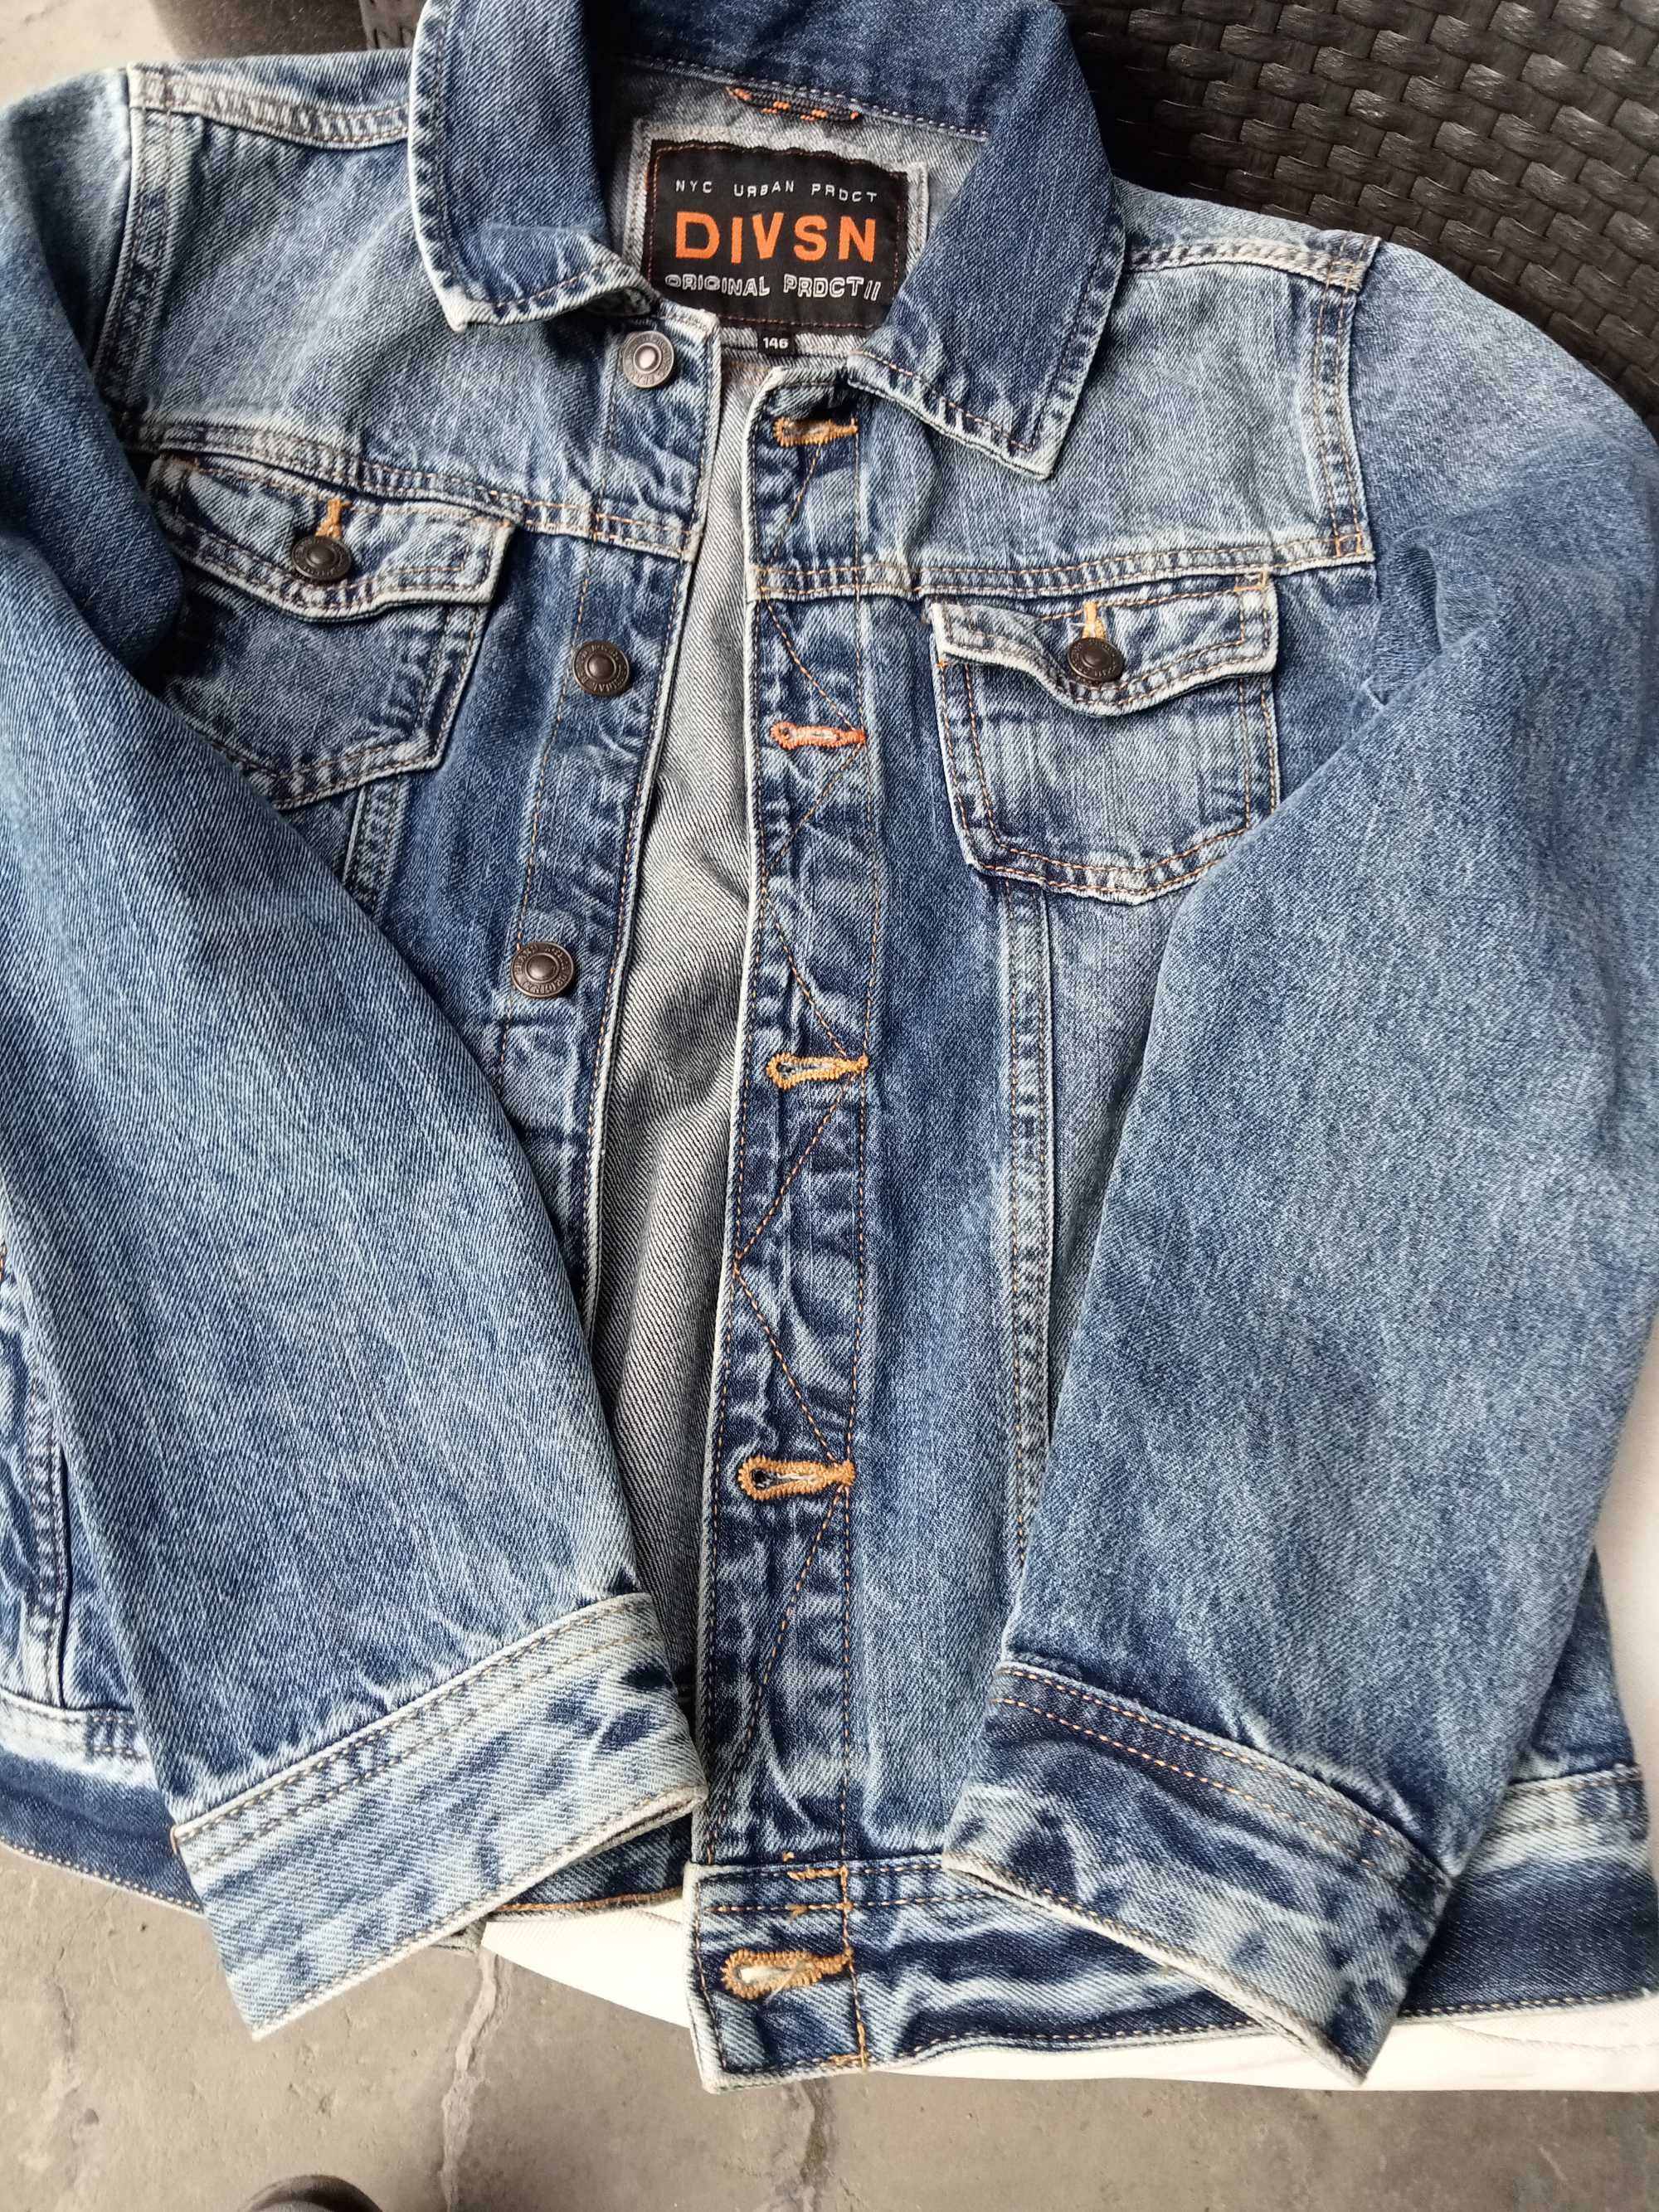 kurtka jeansowa dla chłopca rozmiar 146 jak nowa wysyłka gratis